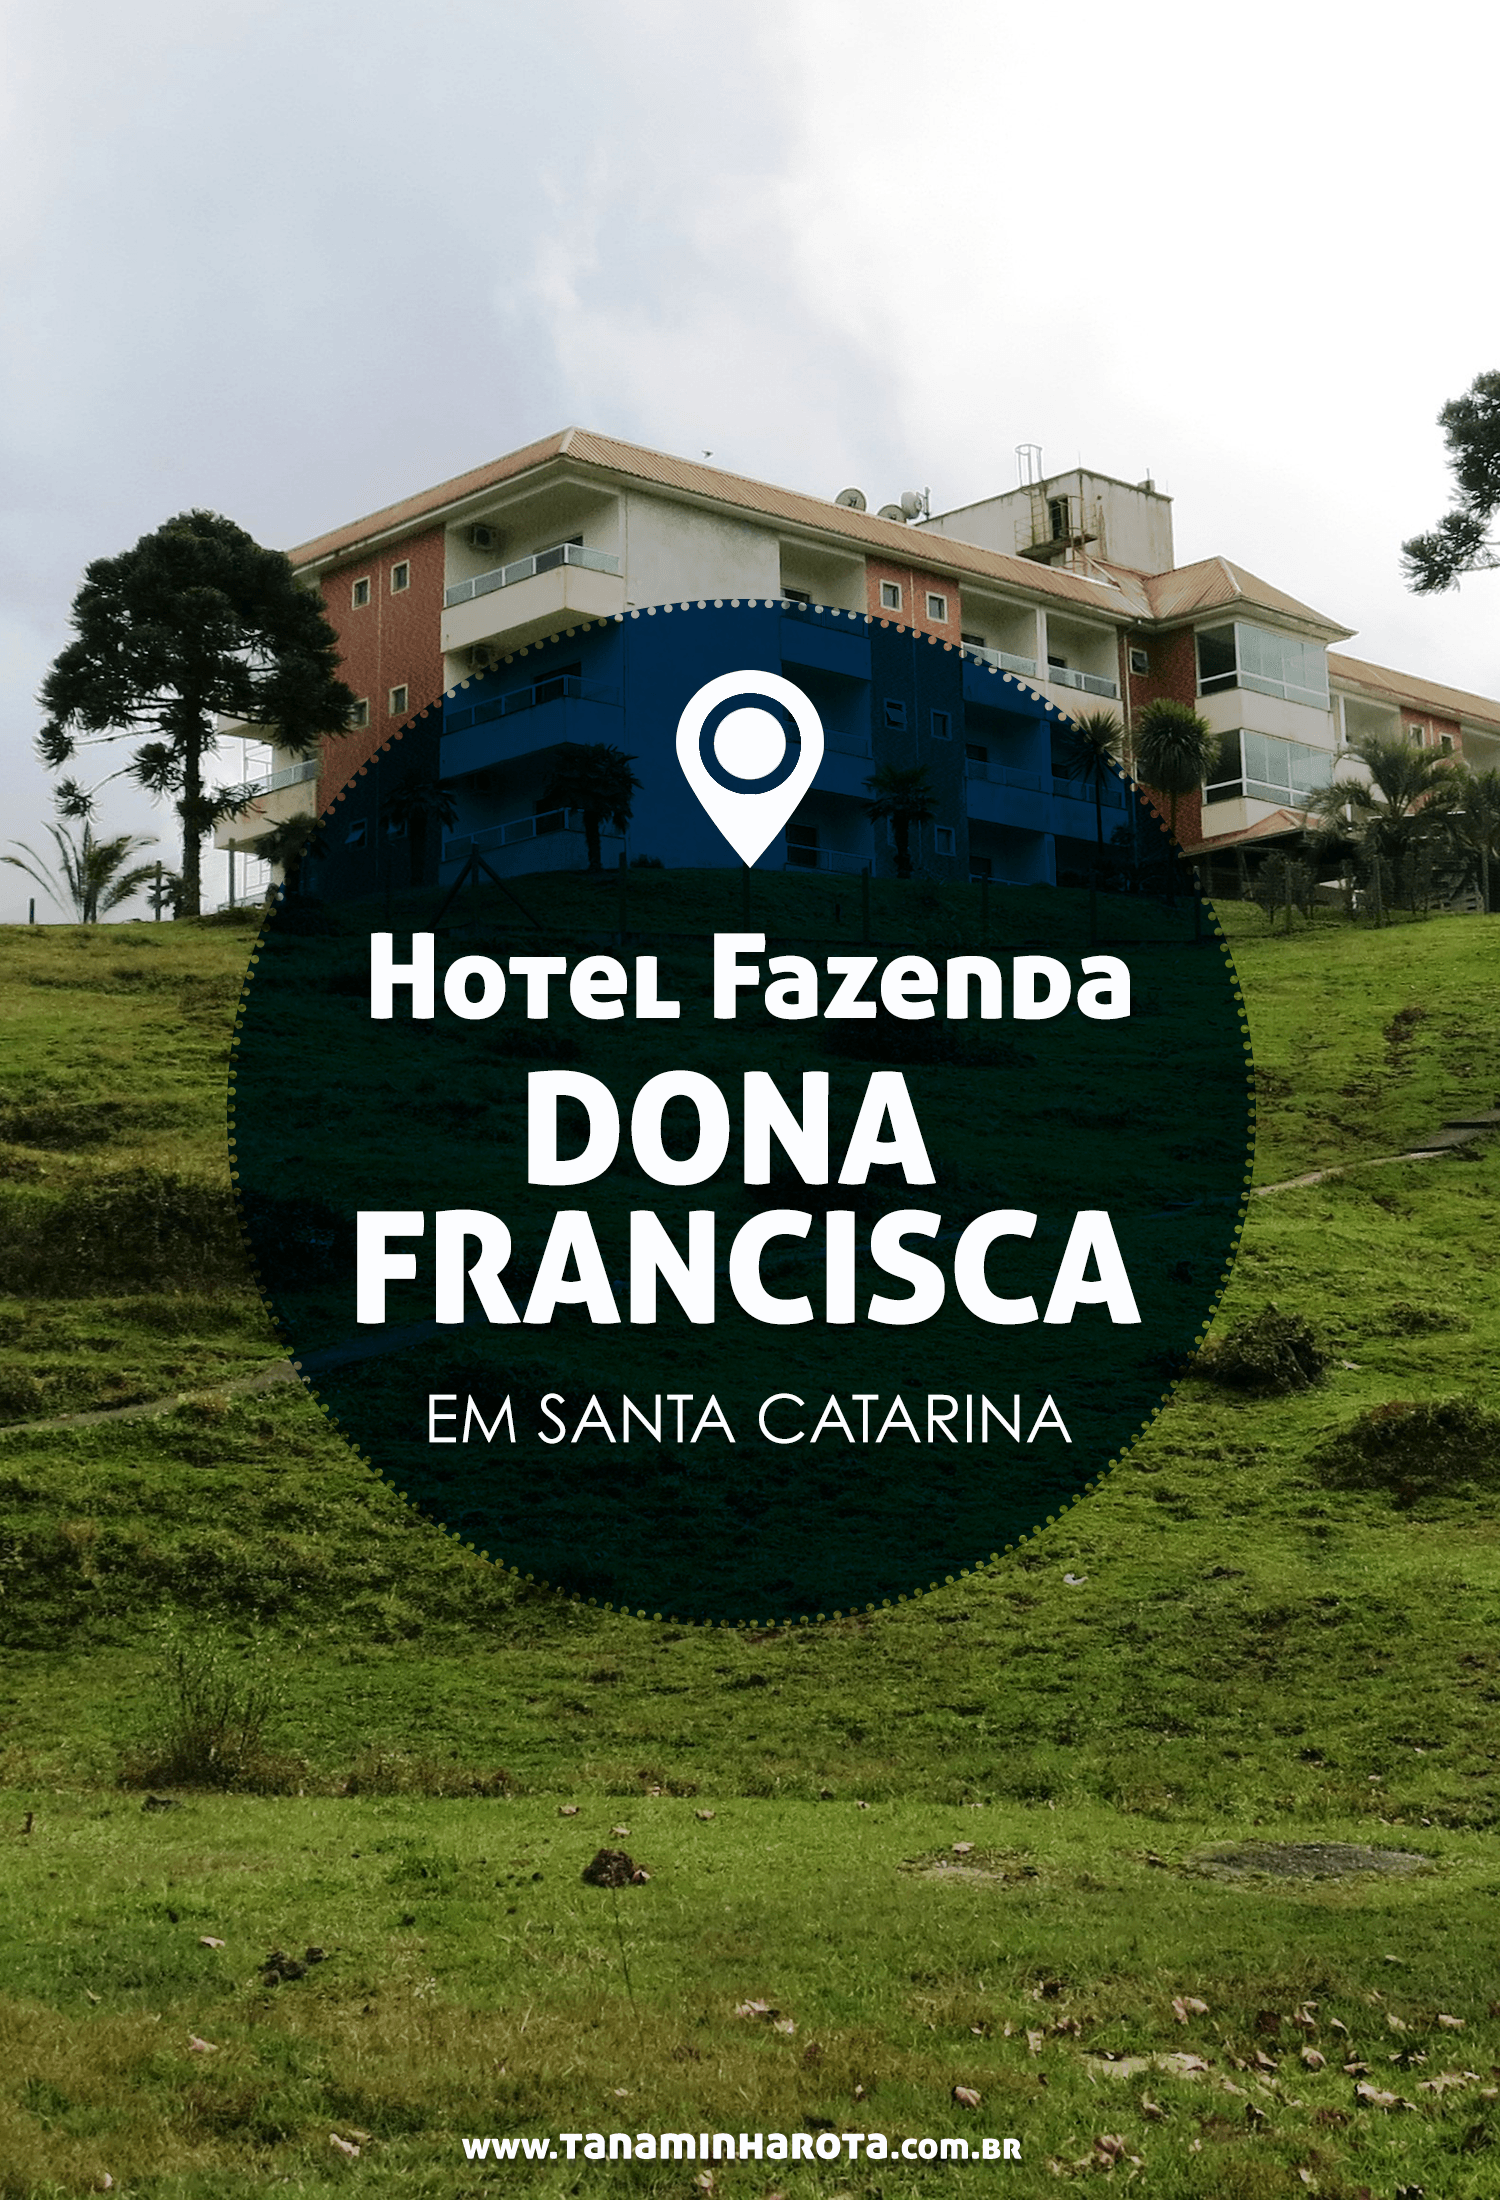 Não sabe onde se hospedar na sua viagem para o sul do Brasil? Então confira a resenha completa do Hotel Fazenda Dona Francisca, em Santa Catarina! #hotelfazenda #hospedagem #santacatarina #brasil #viagem